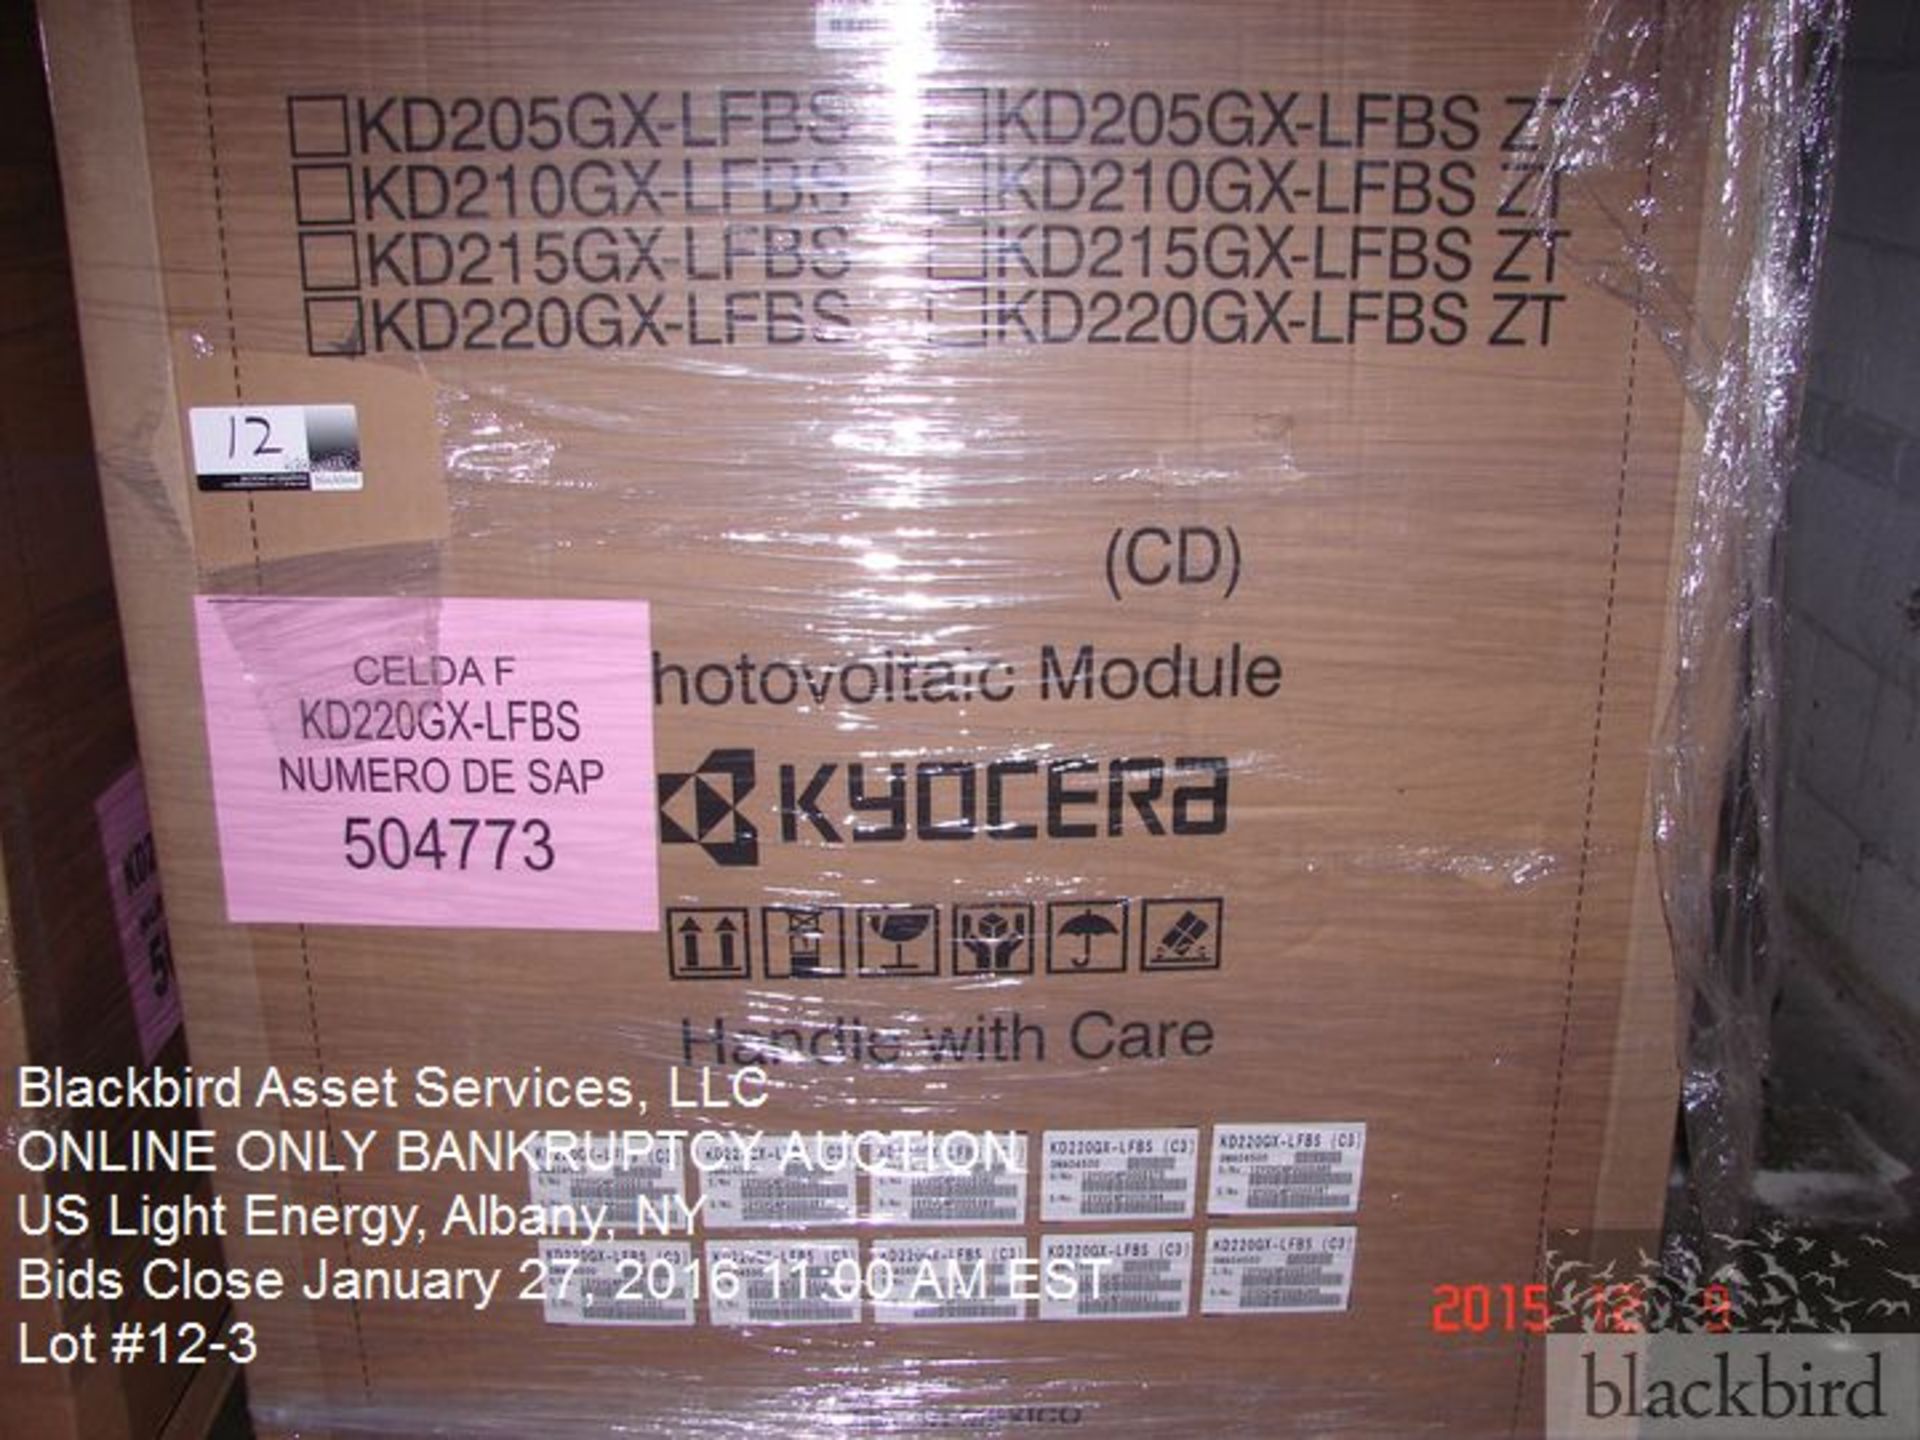 Kyocera KD220GX-LFBS solar panel(s), 220 watt - Image 3 of 3